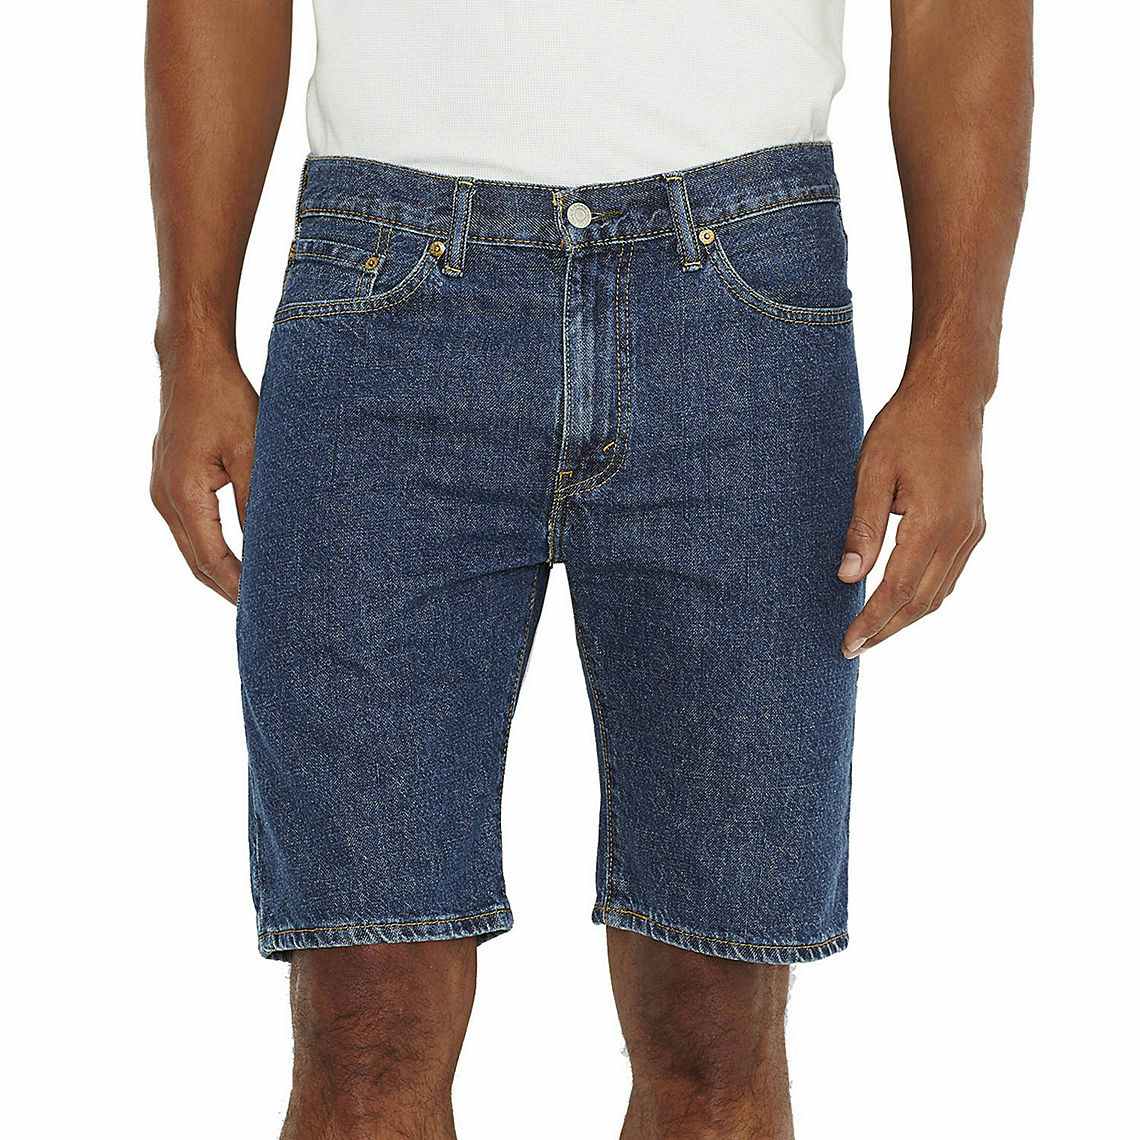 Men's Levi's Shorts